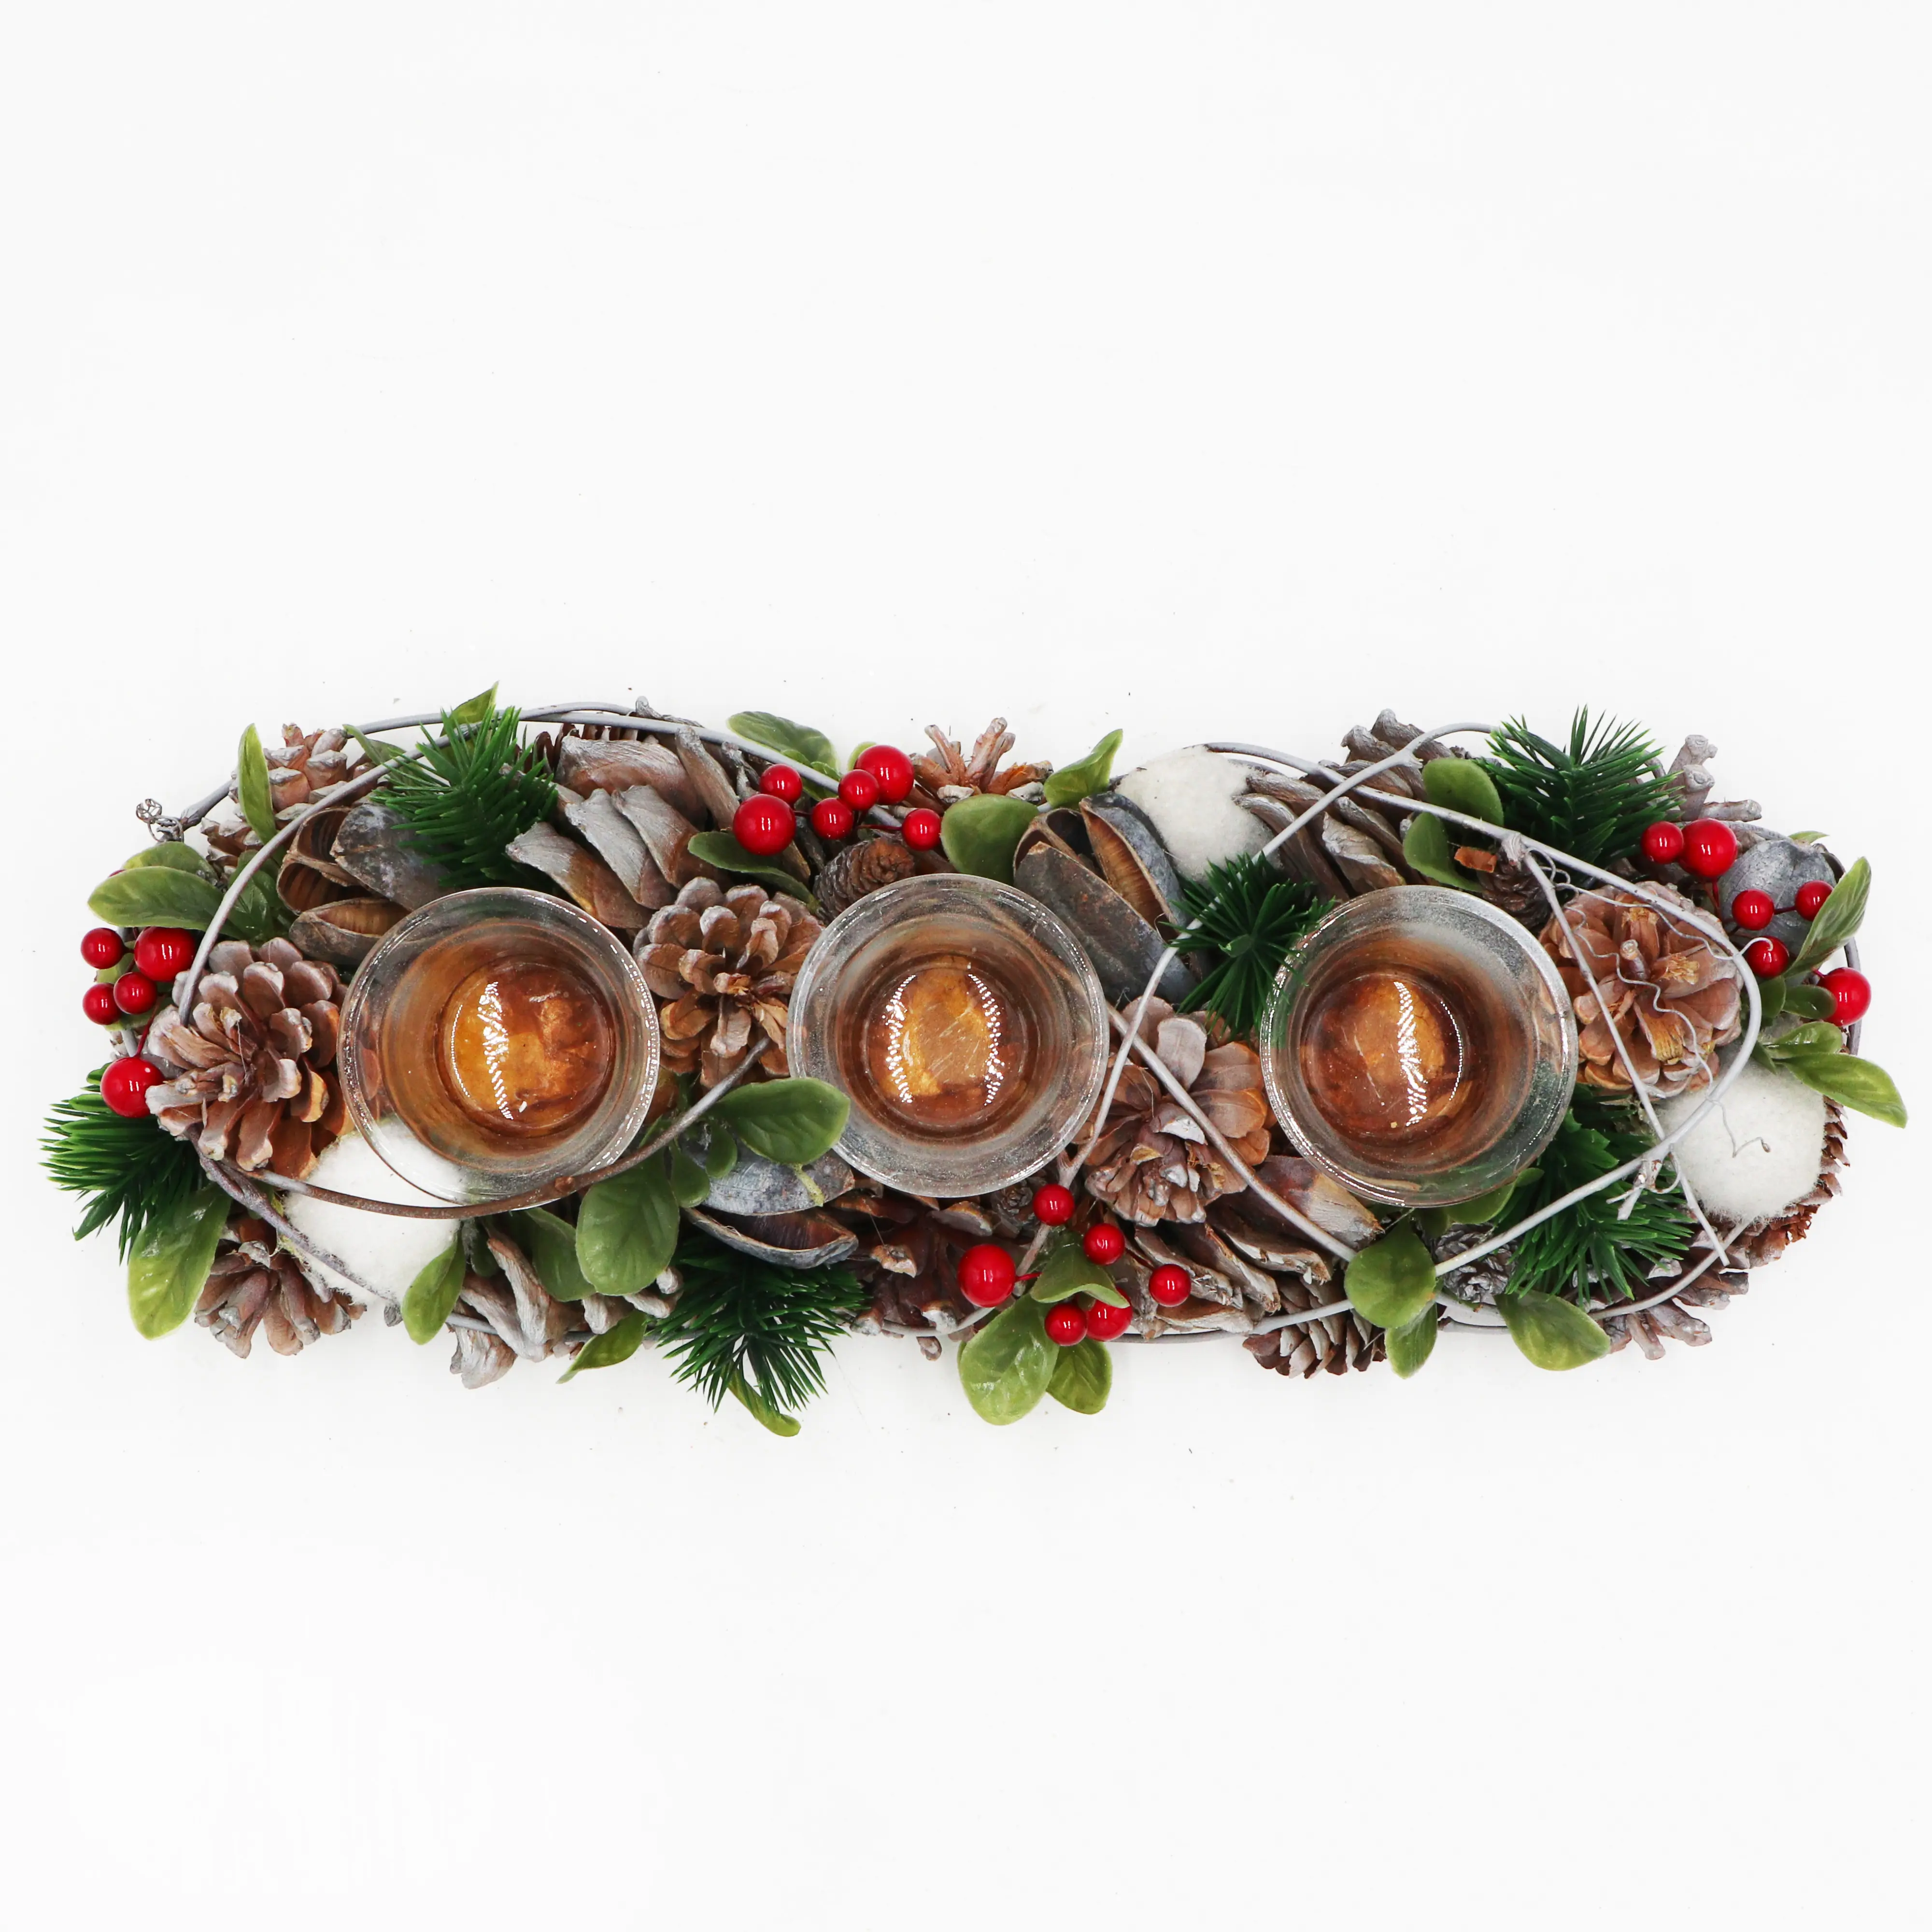 جودة عالية 14 بوصة الصنوبر المخروط شمعة حامل محور مع أفخم الكرة يدويا عيد الميلاد المنزل ديكور للطاولات